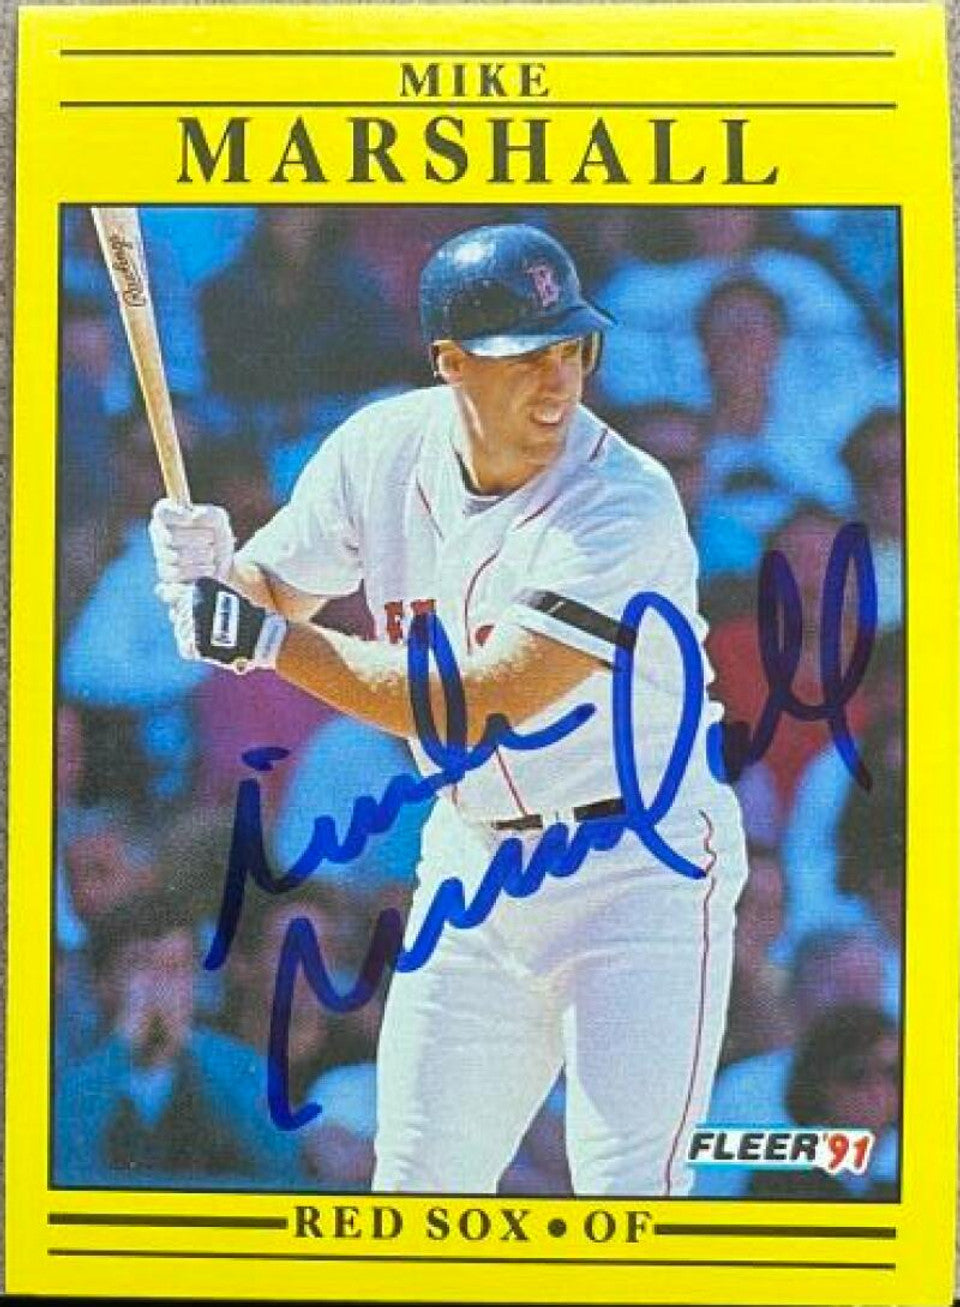 マイク・マーシャルが署名した 1991 年のフリーア ベースボール カード - ボストン レッドソックス